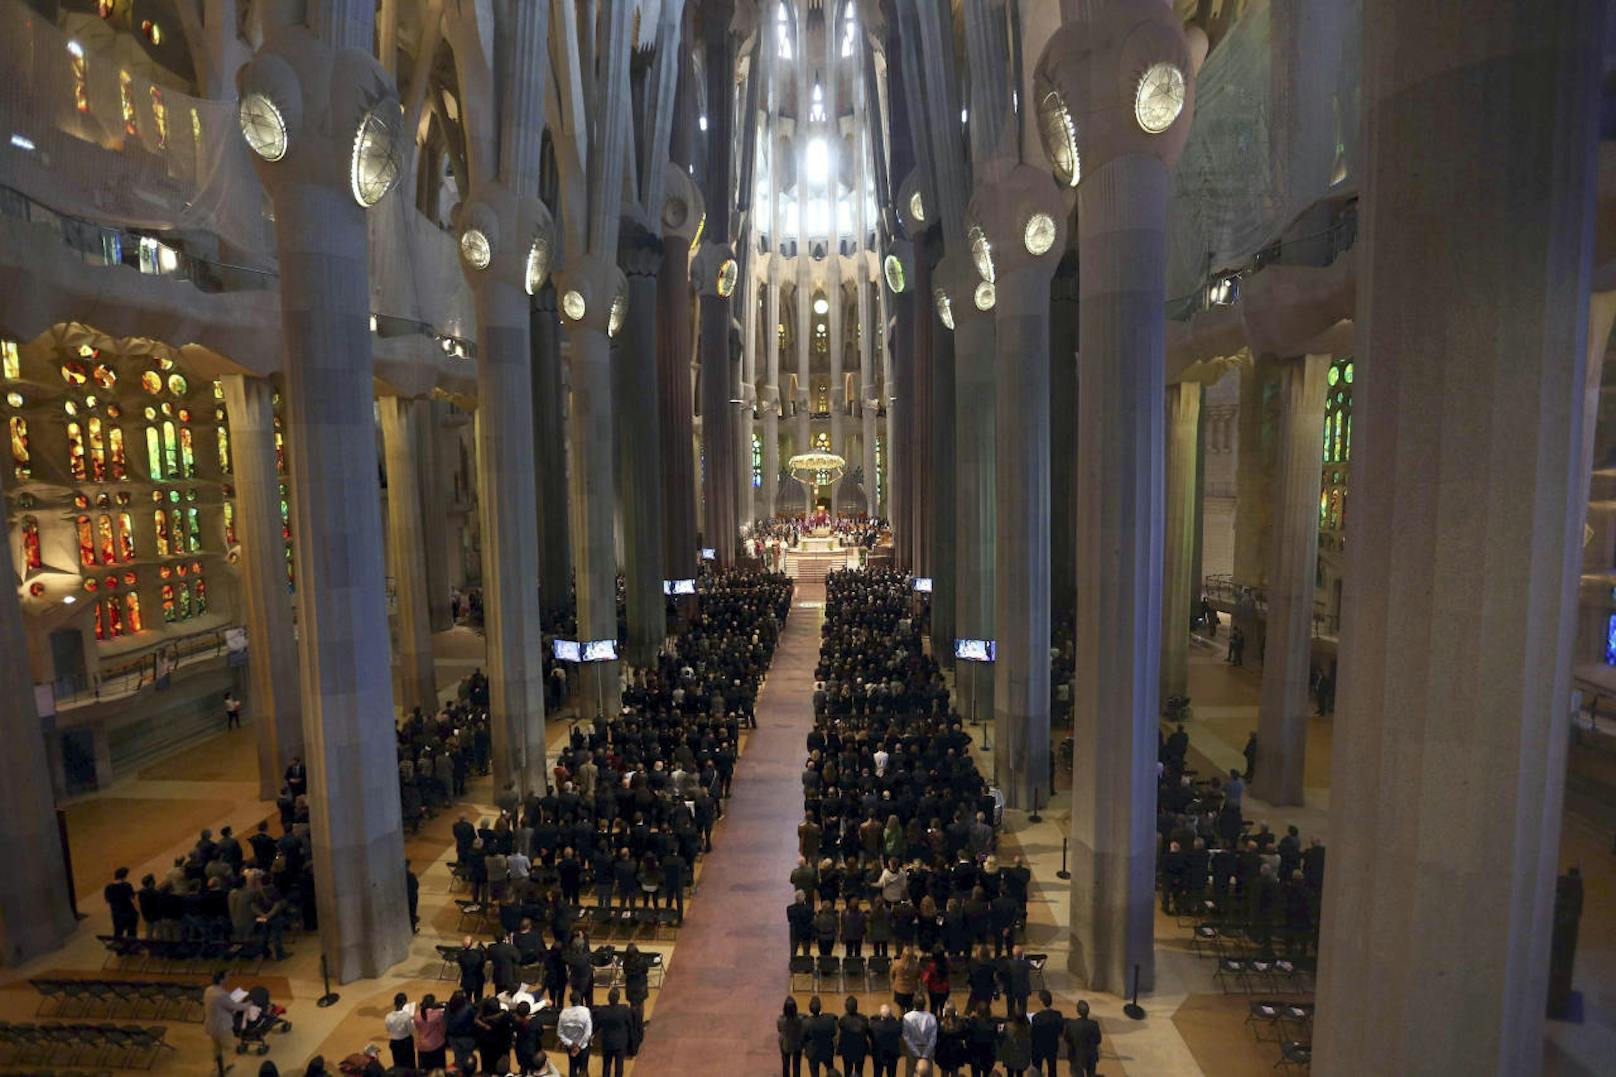 Der unvollendete Bau gehört zu den wichtigsten Sehenswürdigkeiten Barcelonas, jährlich besuchen die Basilika über zwei Millionen Touristen.